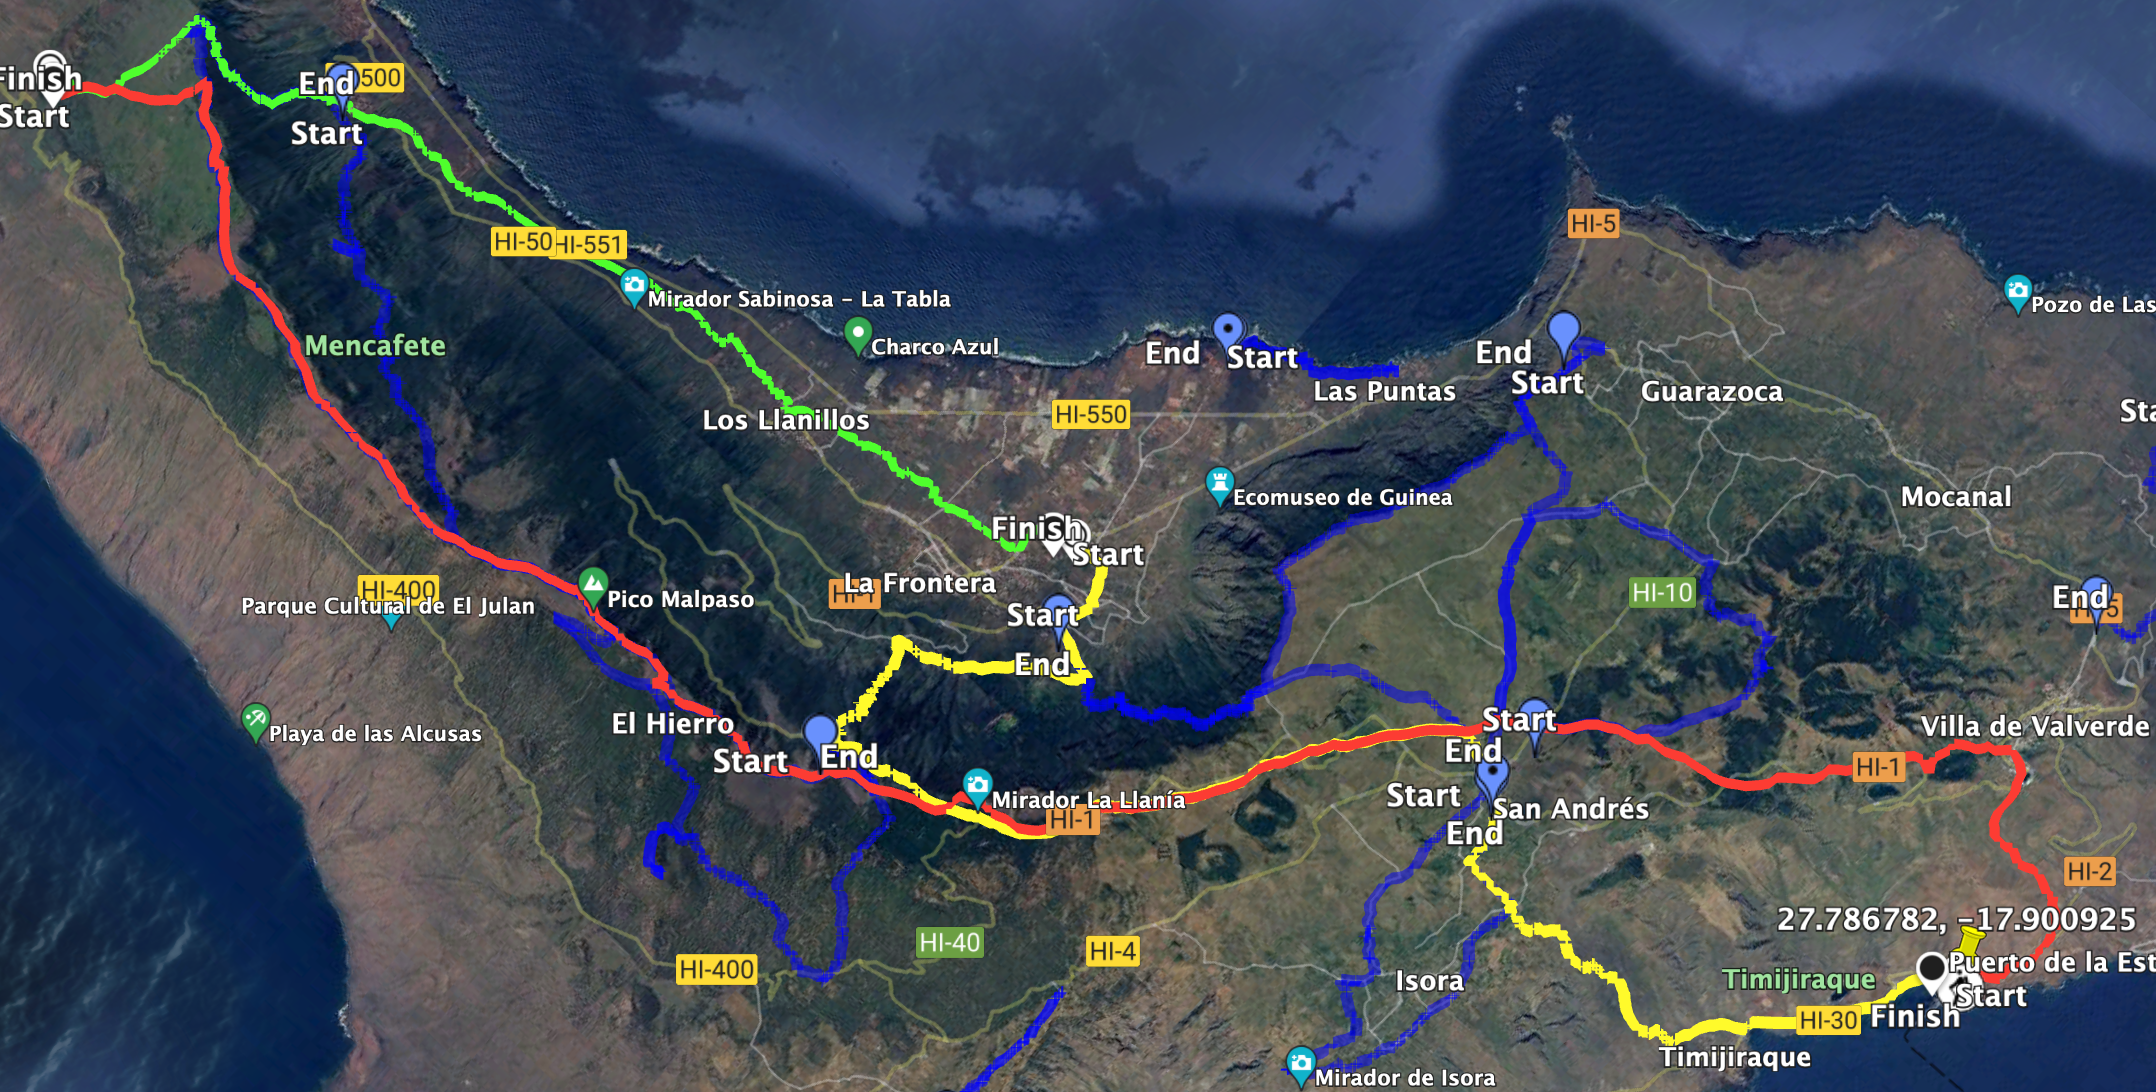 rojo: GR-131 Camino de la Virgen

azul: otras rutas por el sendero que puedes encontrar en SiebenInseln